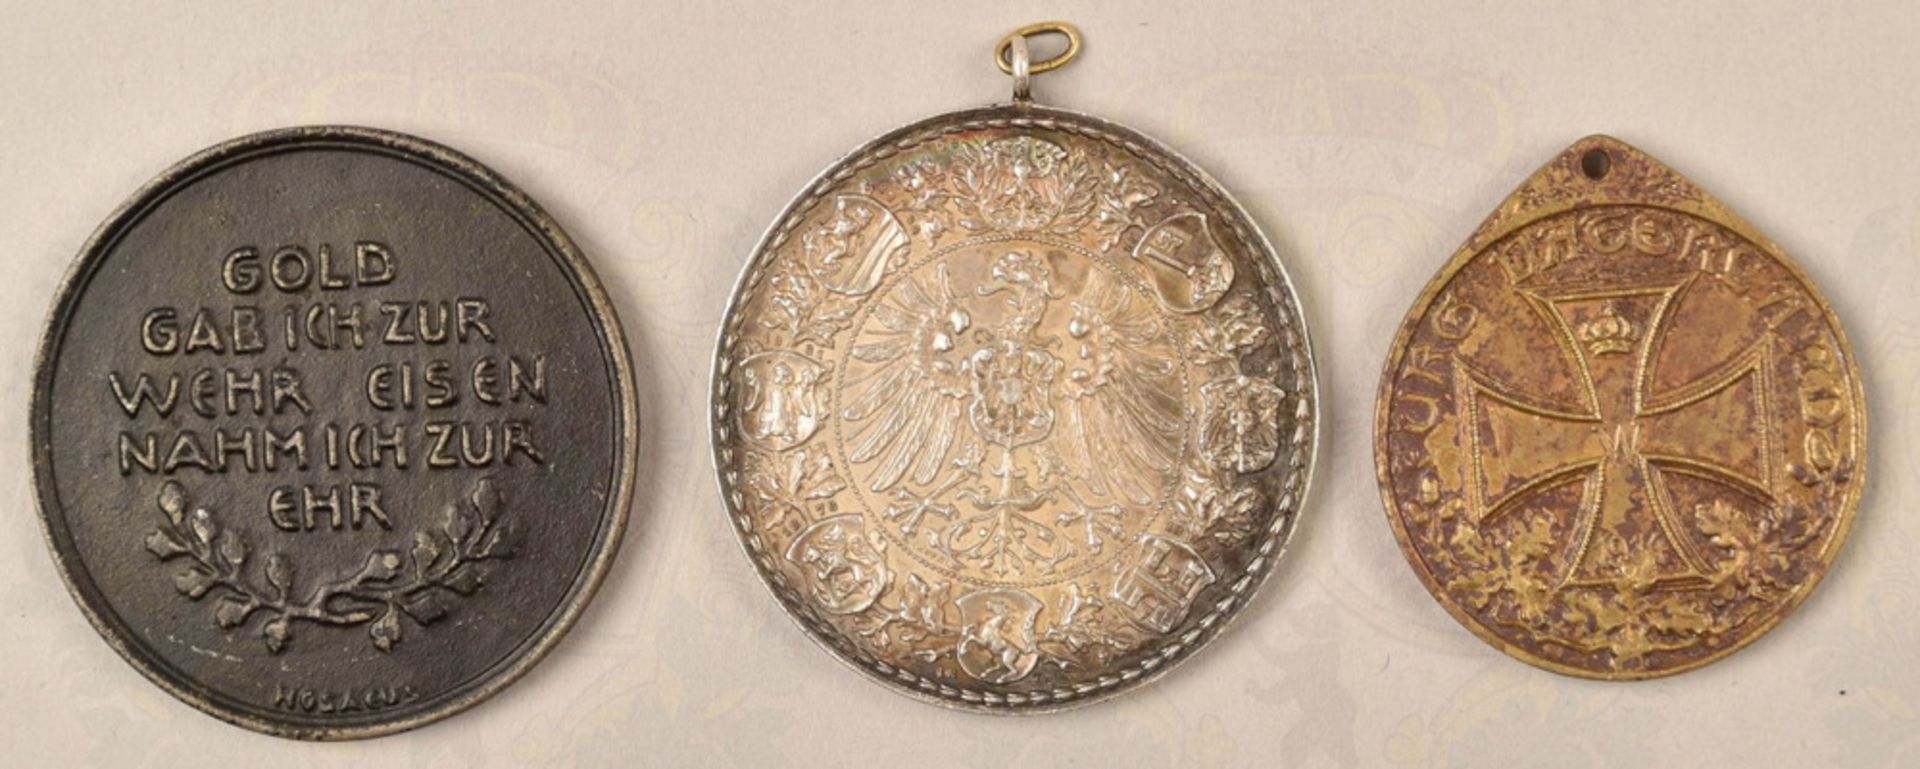 German jubilee shooting medal 1887 Frankfurt/Main - Image 2 of 2